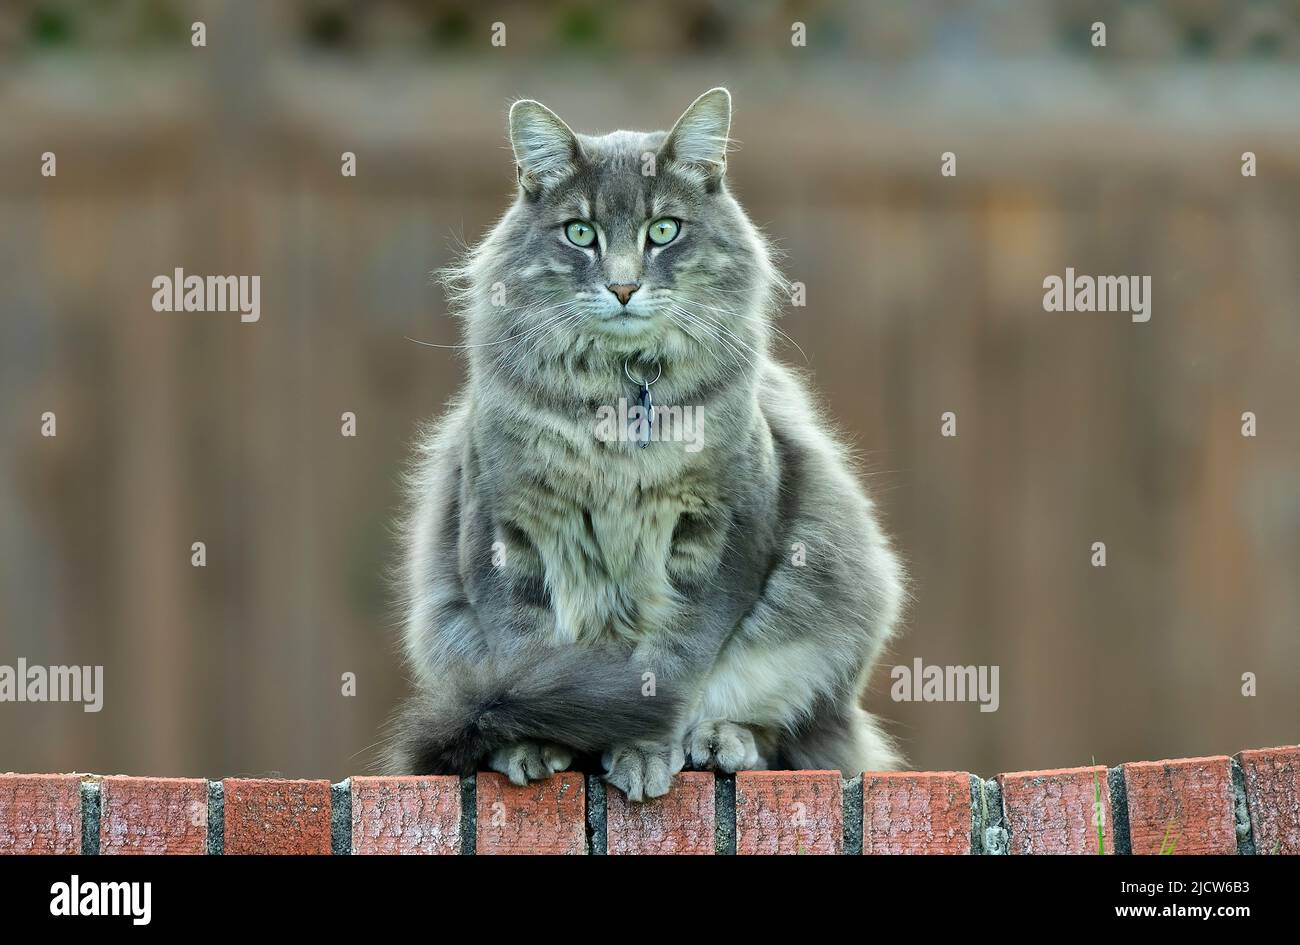 Un gato doméstico adulto sentado en una valla de ladrillo Foto de stock